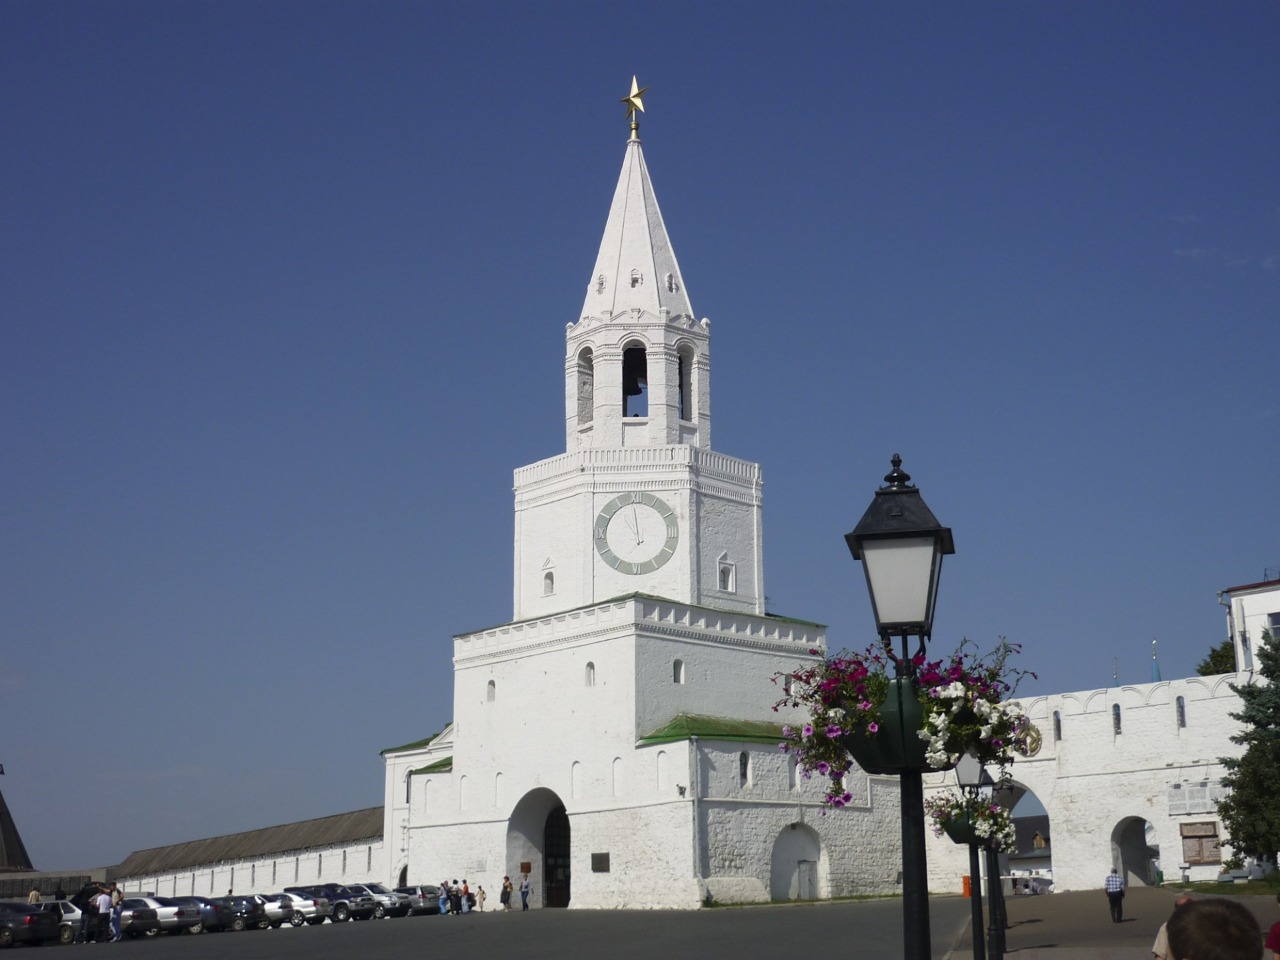 Обзорная экскурсия по Казани с посещением Кремля | Цена 1280₽, отзывы, описание экскурсии